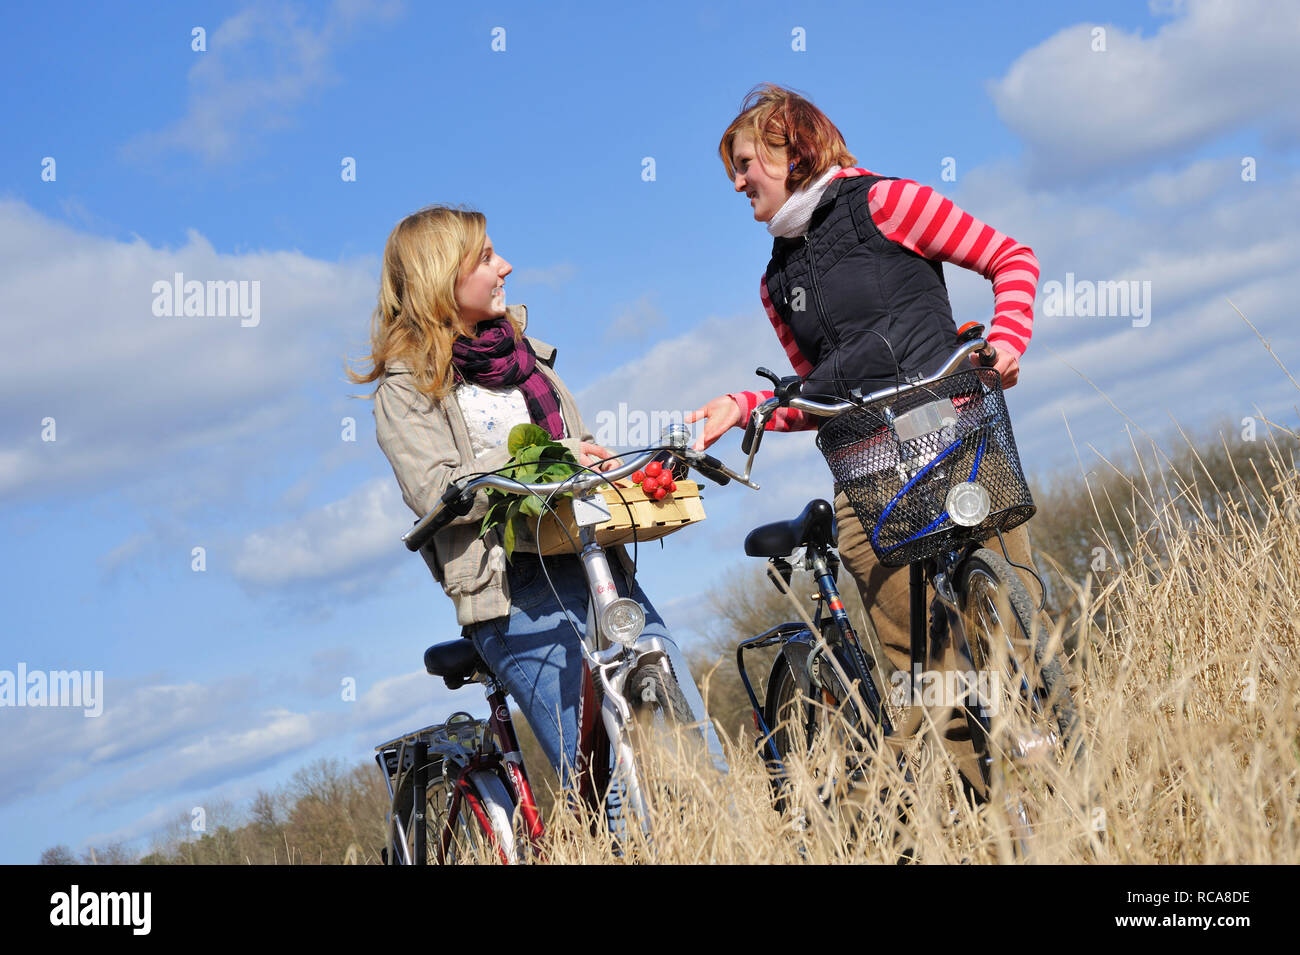 Zwei jungendliche Frauen mit Fahrrad und Gemüsekorb - junges Gemüse | zwei junge Frauen mit ihrem Fahrrad und ein Gemüse Warenkorb Stockfoto